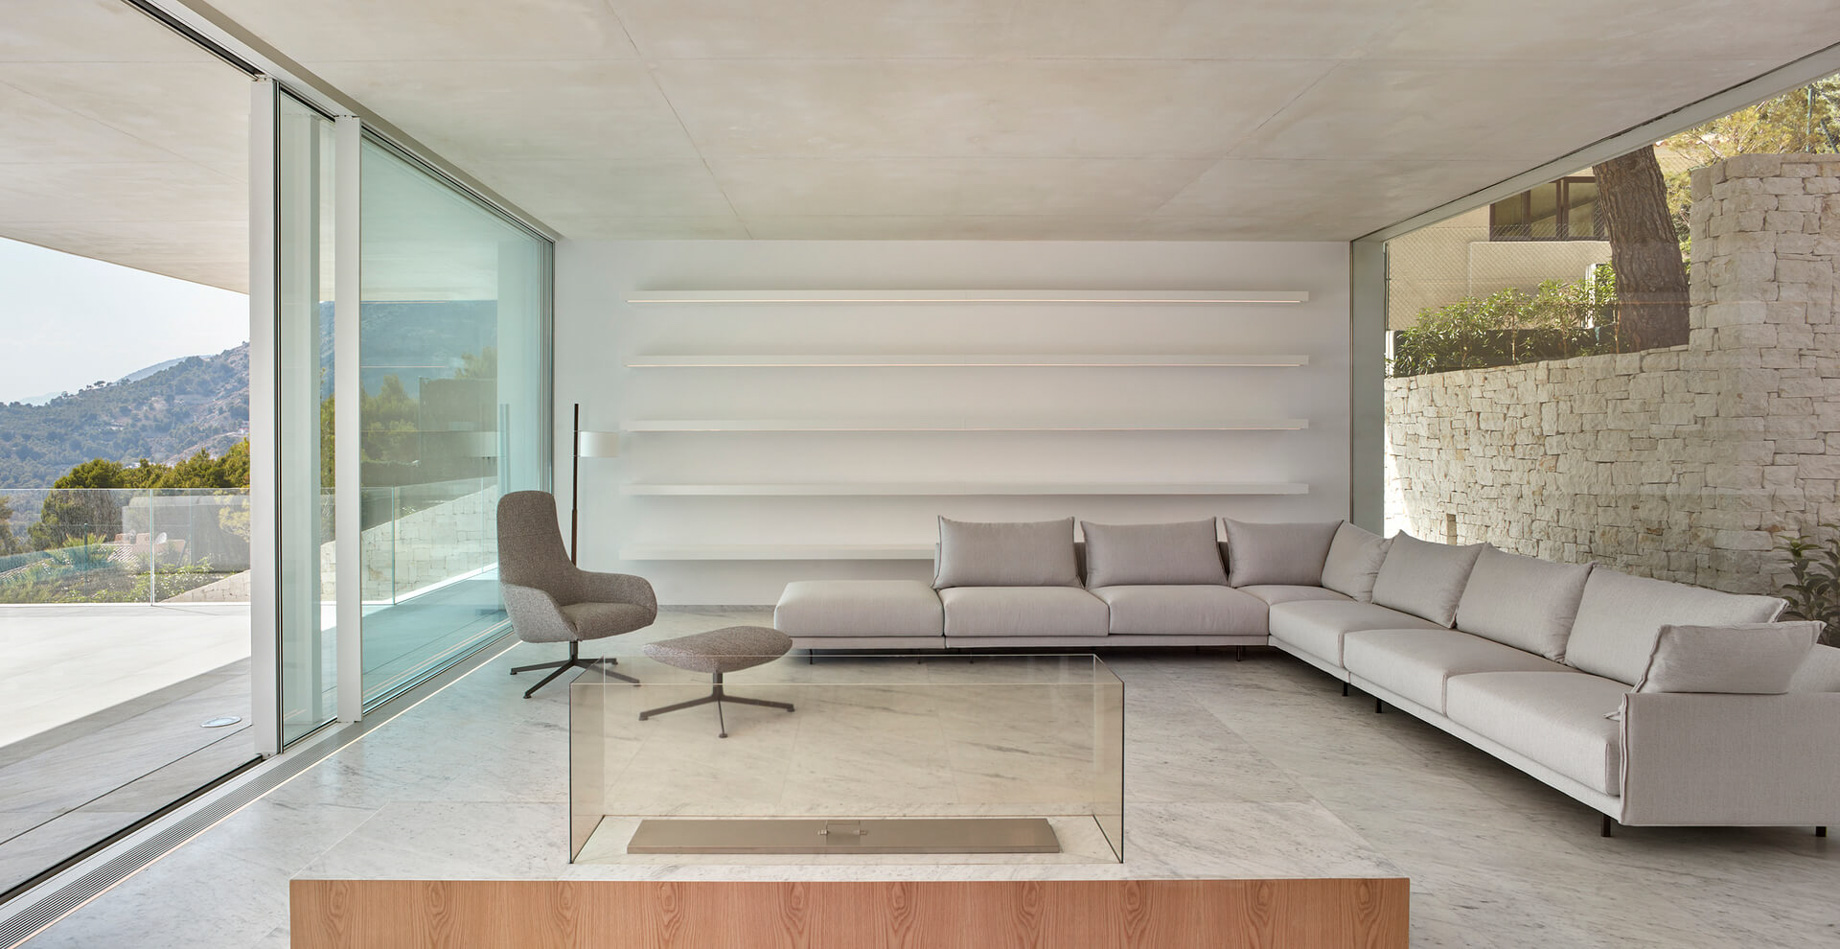 Casa Oslo Modern Contemporary Residence – Alicante, Spain – 19